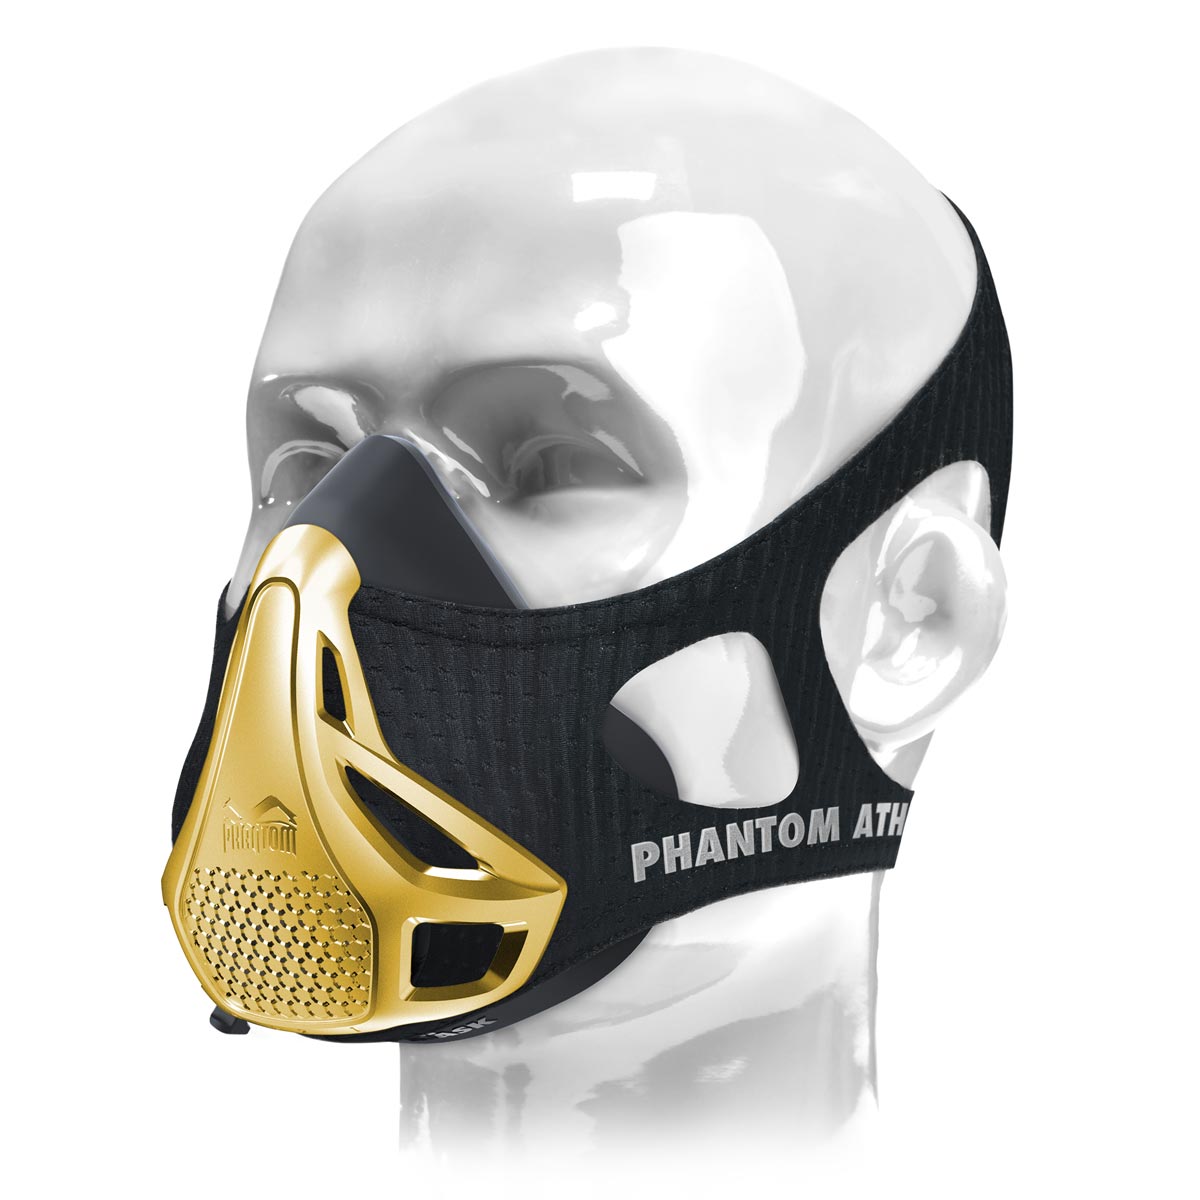 Le masque d'entraînement Phantom . L'original. Breveté et récompensé pour faire passer votre condition physique au niveau supérieur. Maintenant dans une édition limitée en or.